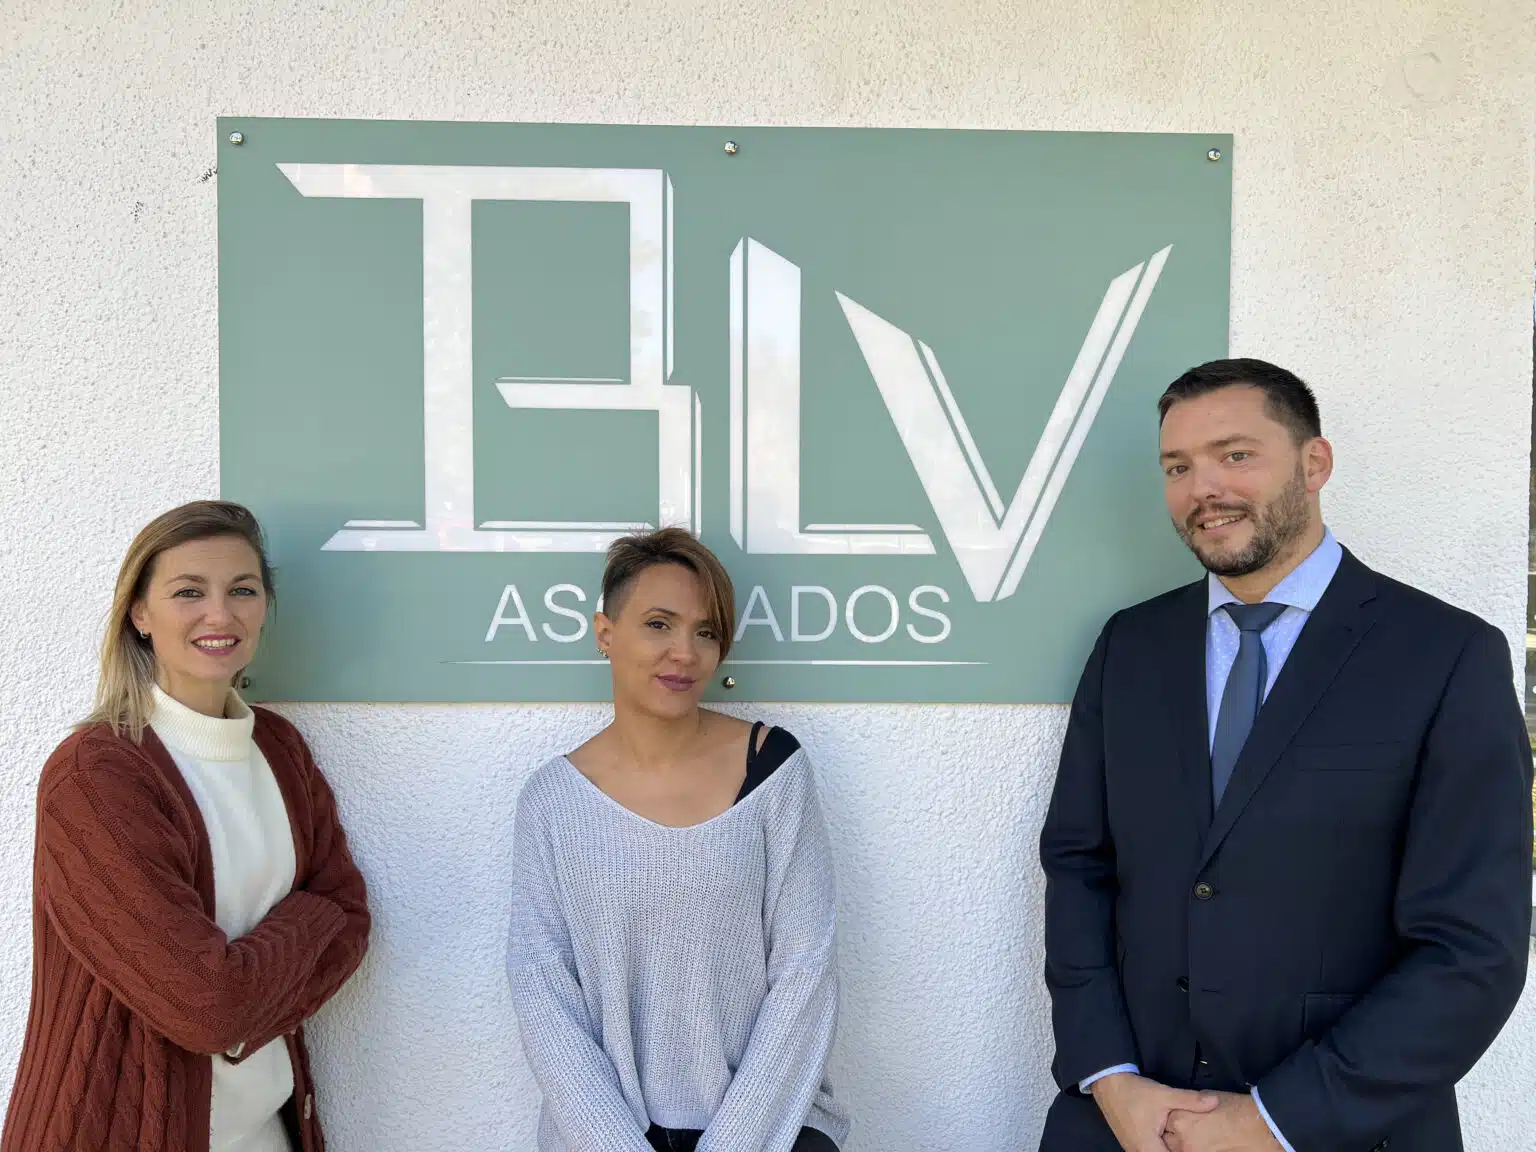 Entrevista a Bárbara De la Mata Martínez, Luis Sánchez Gimeno y Vanessa Vega Robles, de BLV Asociados: «Trabajamos por tu bienestar e intereses »